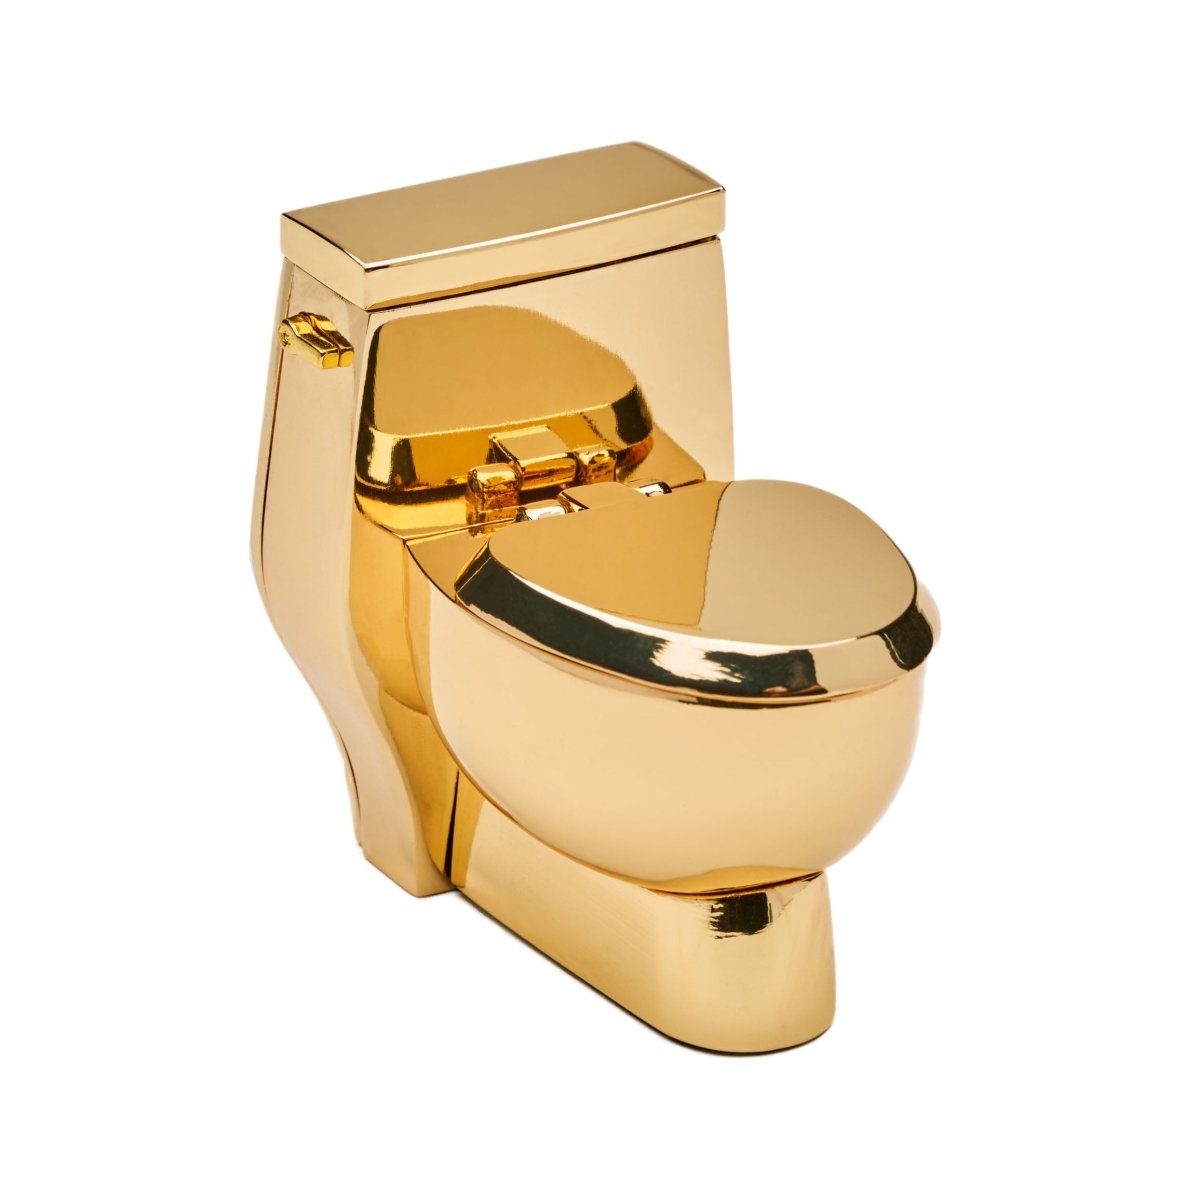 Toilet Clock | Gold - Tokyobay